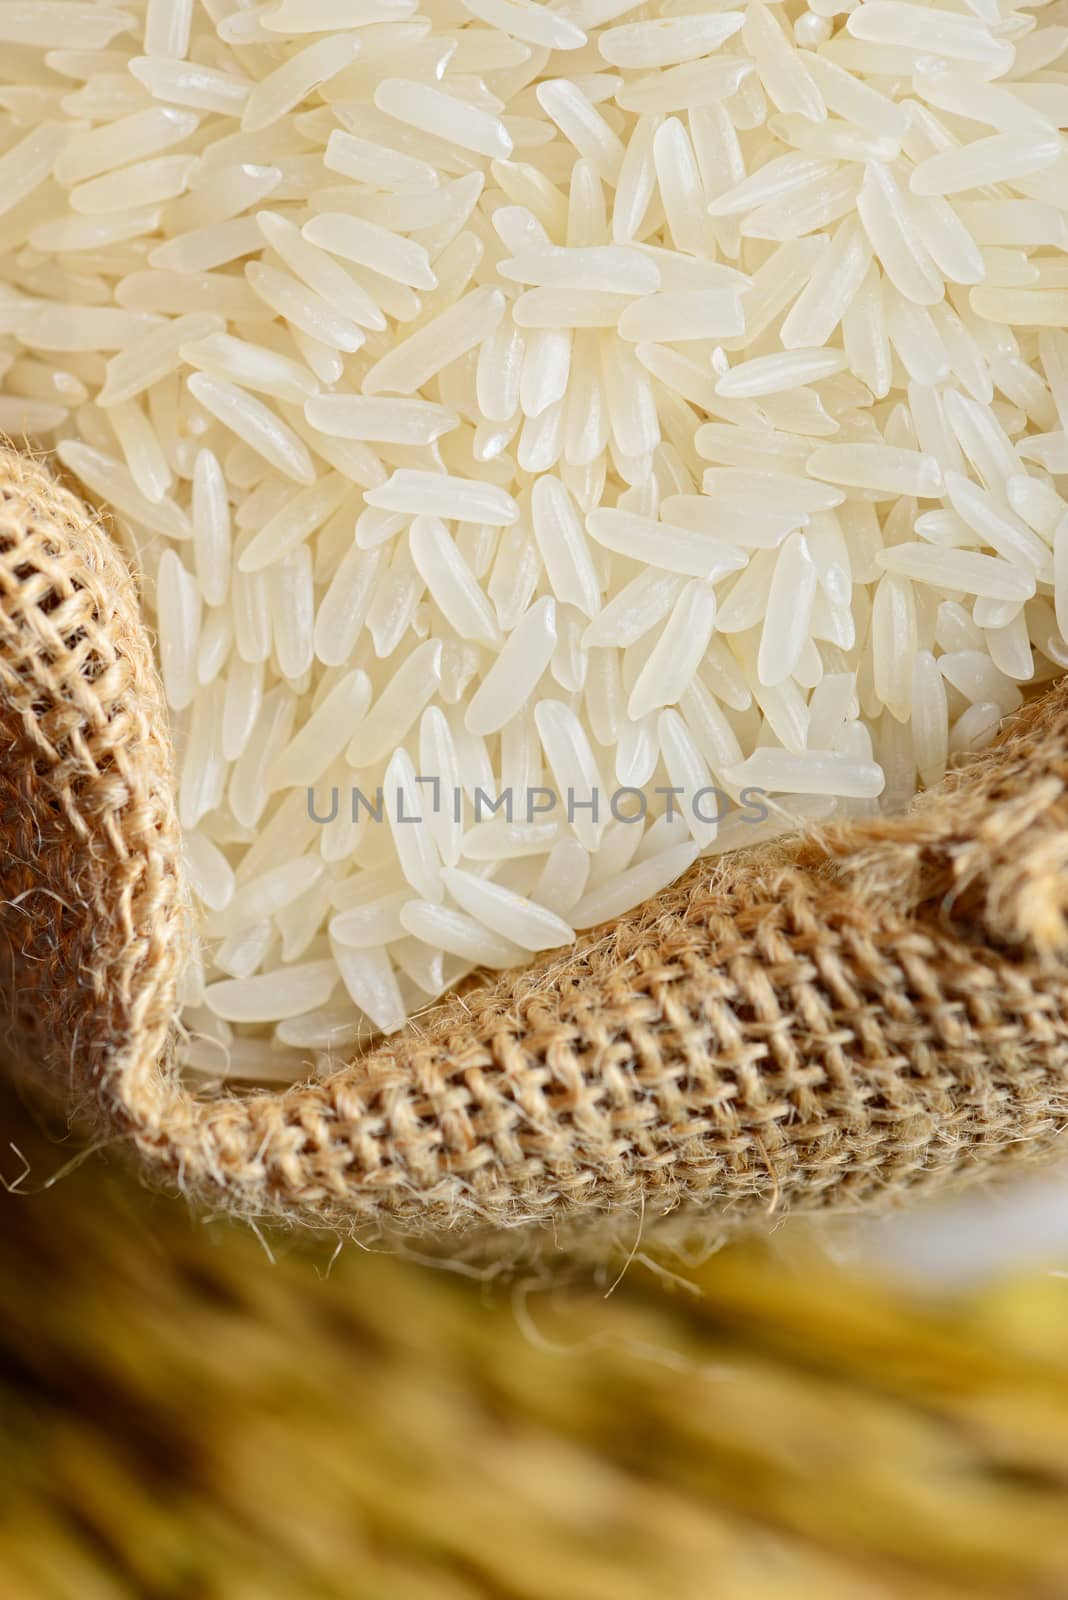 white rice in burlap sack